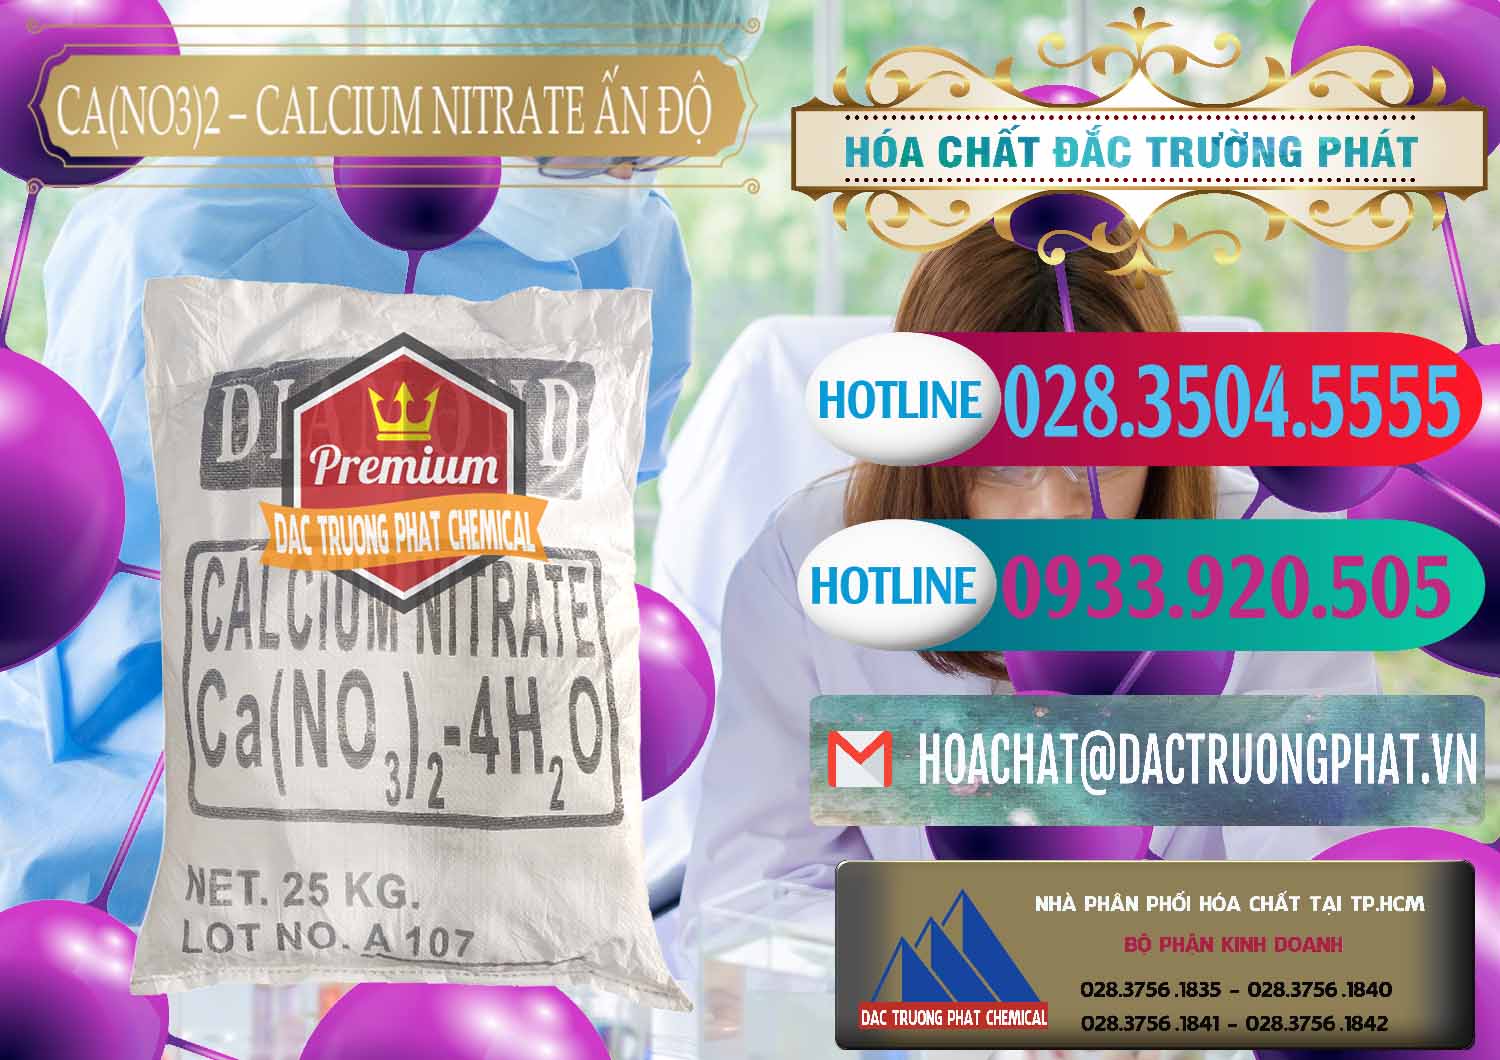 Đơn vị bán và cung cấp CA(NO3)2 – Calcium Nitrate Ấn Độ India - 0038 - Công ty cung cấp - phân phối hóa chất tại TP.HCM - truongphat.vn